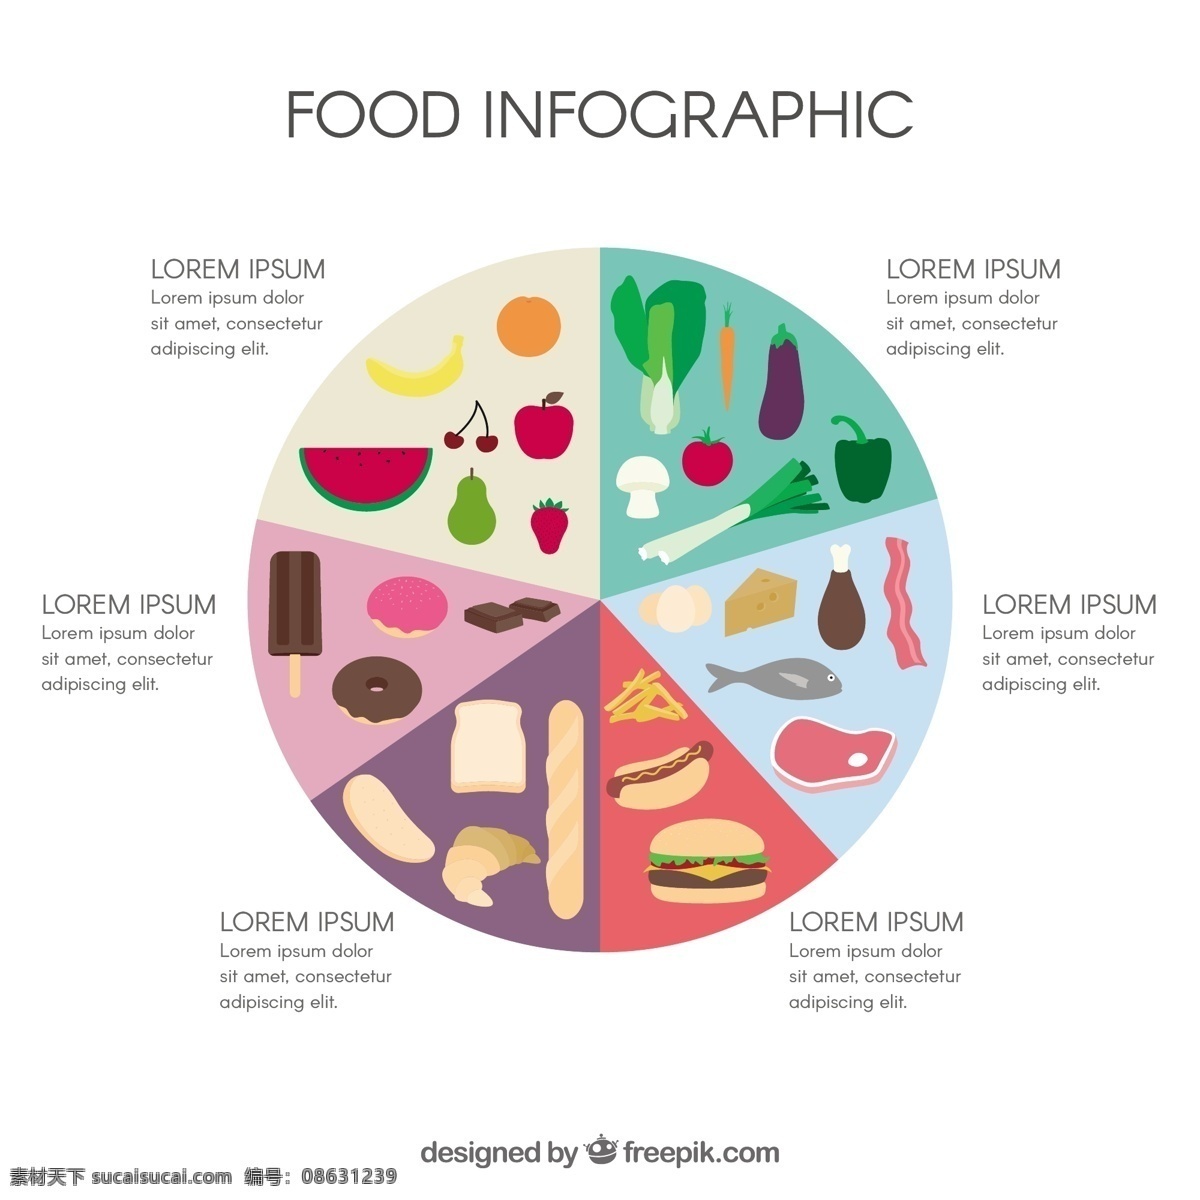 食品 信息 图表 模板 图形 营销 蔬菜 水果 烹饪过程 信息图表模板 数据 健康信息 成长 健康食品 信息图形